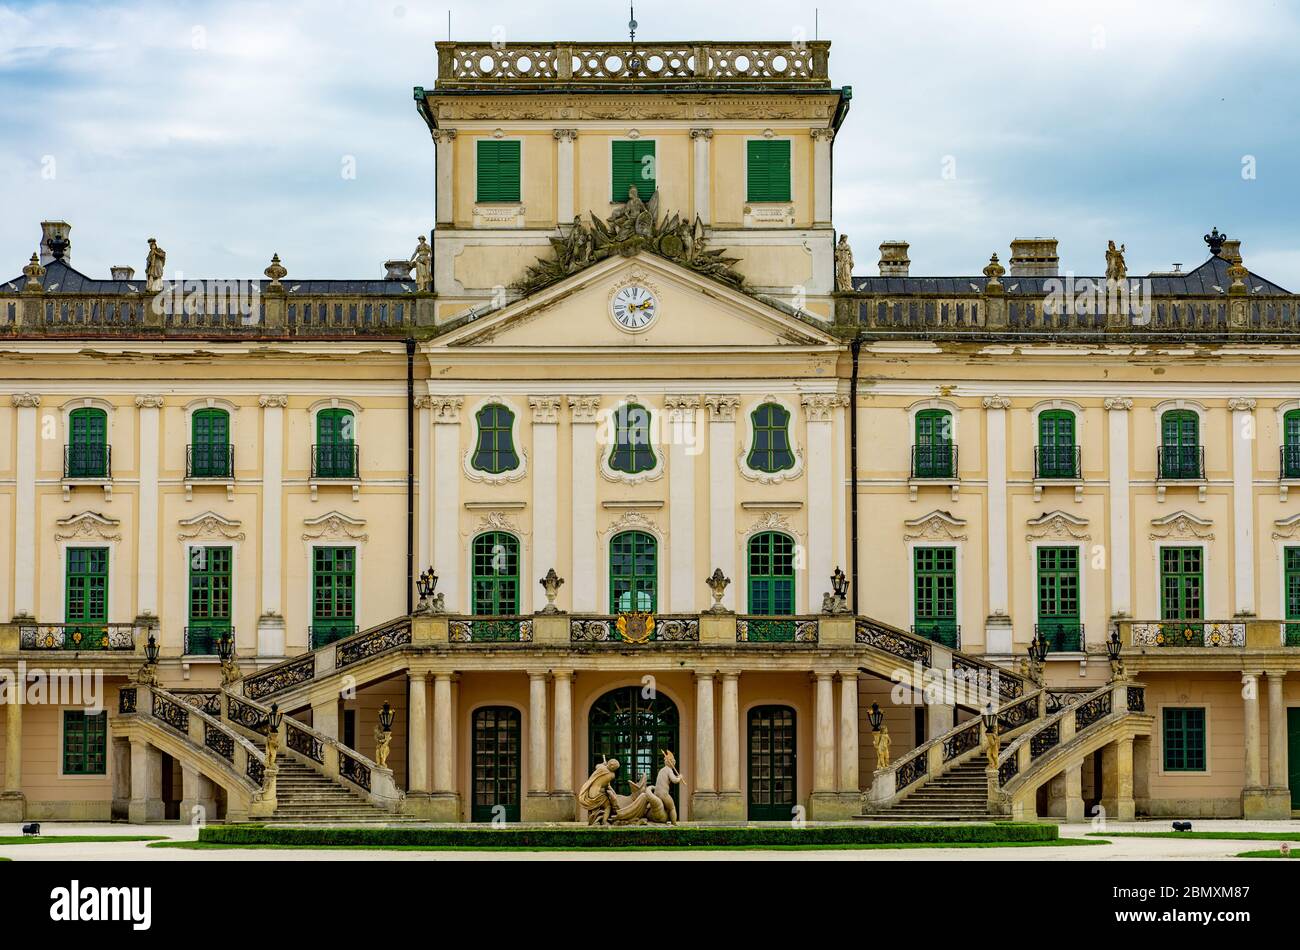 Magnifique château immense d'Esterhazy en Fertőd Hongrie avec jardin Banque D'Images